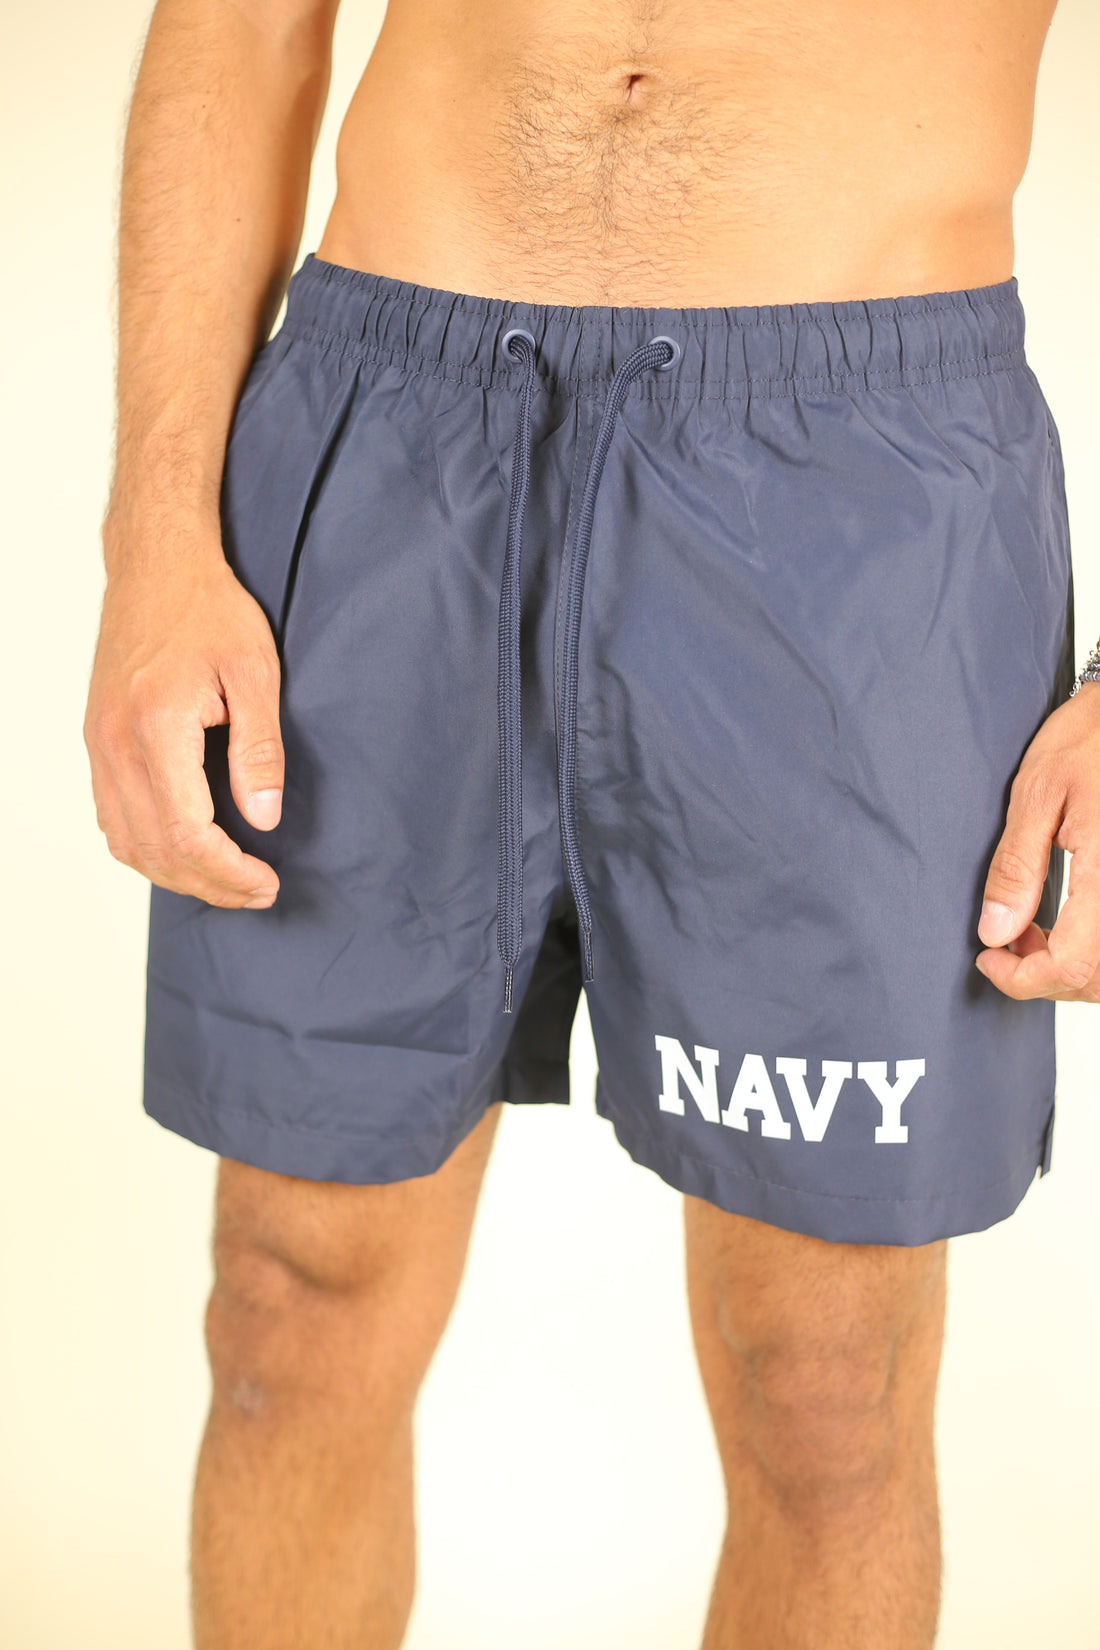 Costume US Navy